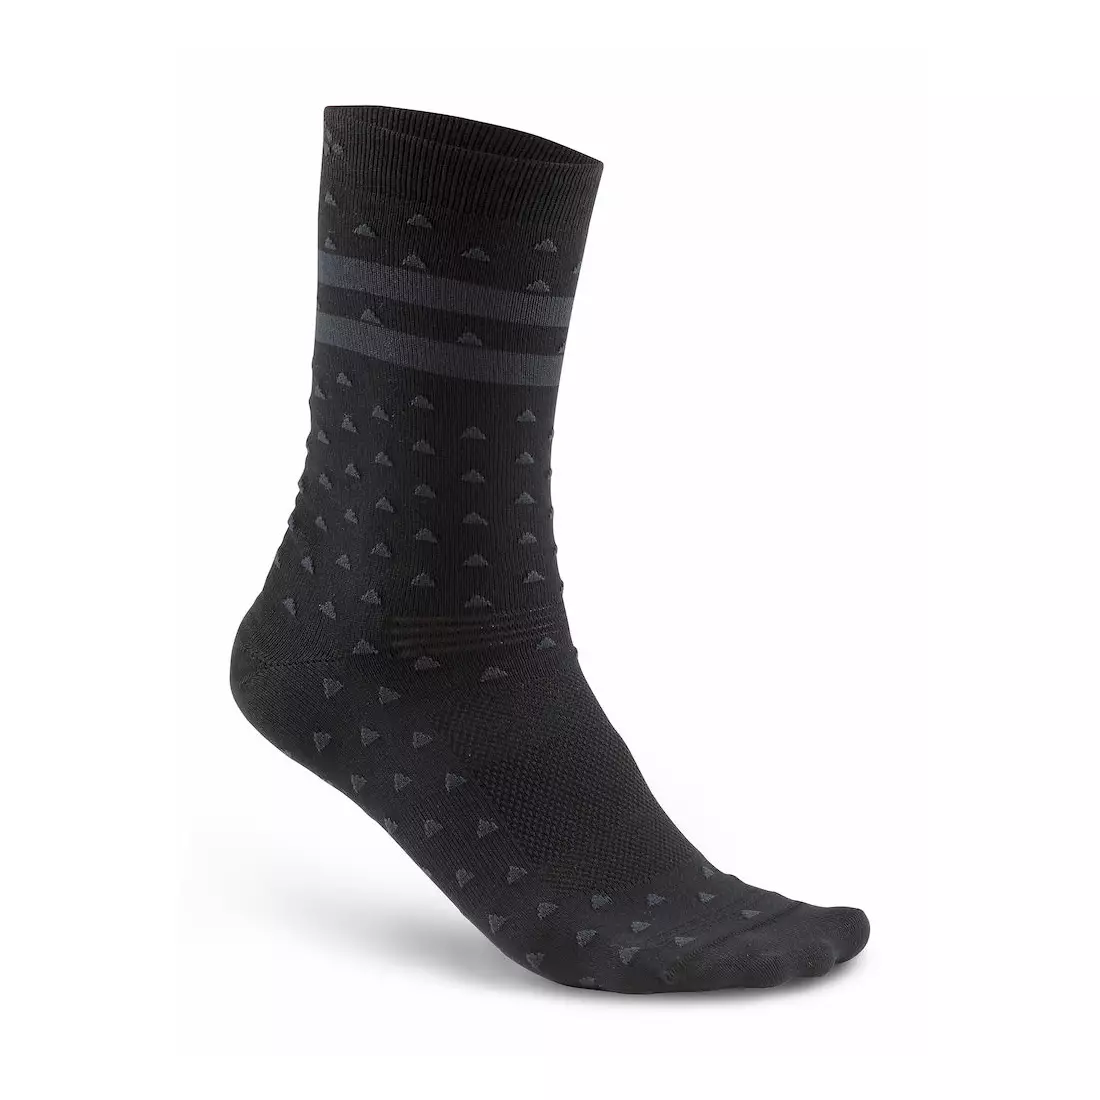 CRAFT Pattern Sock 1906061-999947 - Sports socks